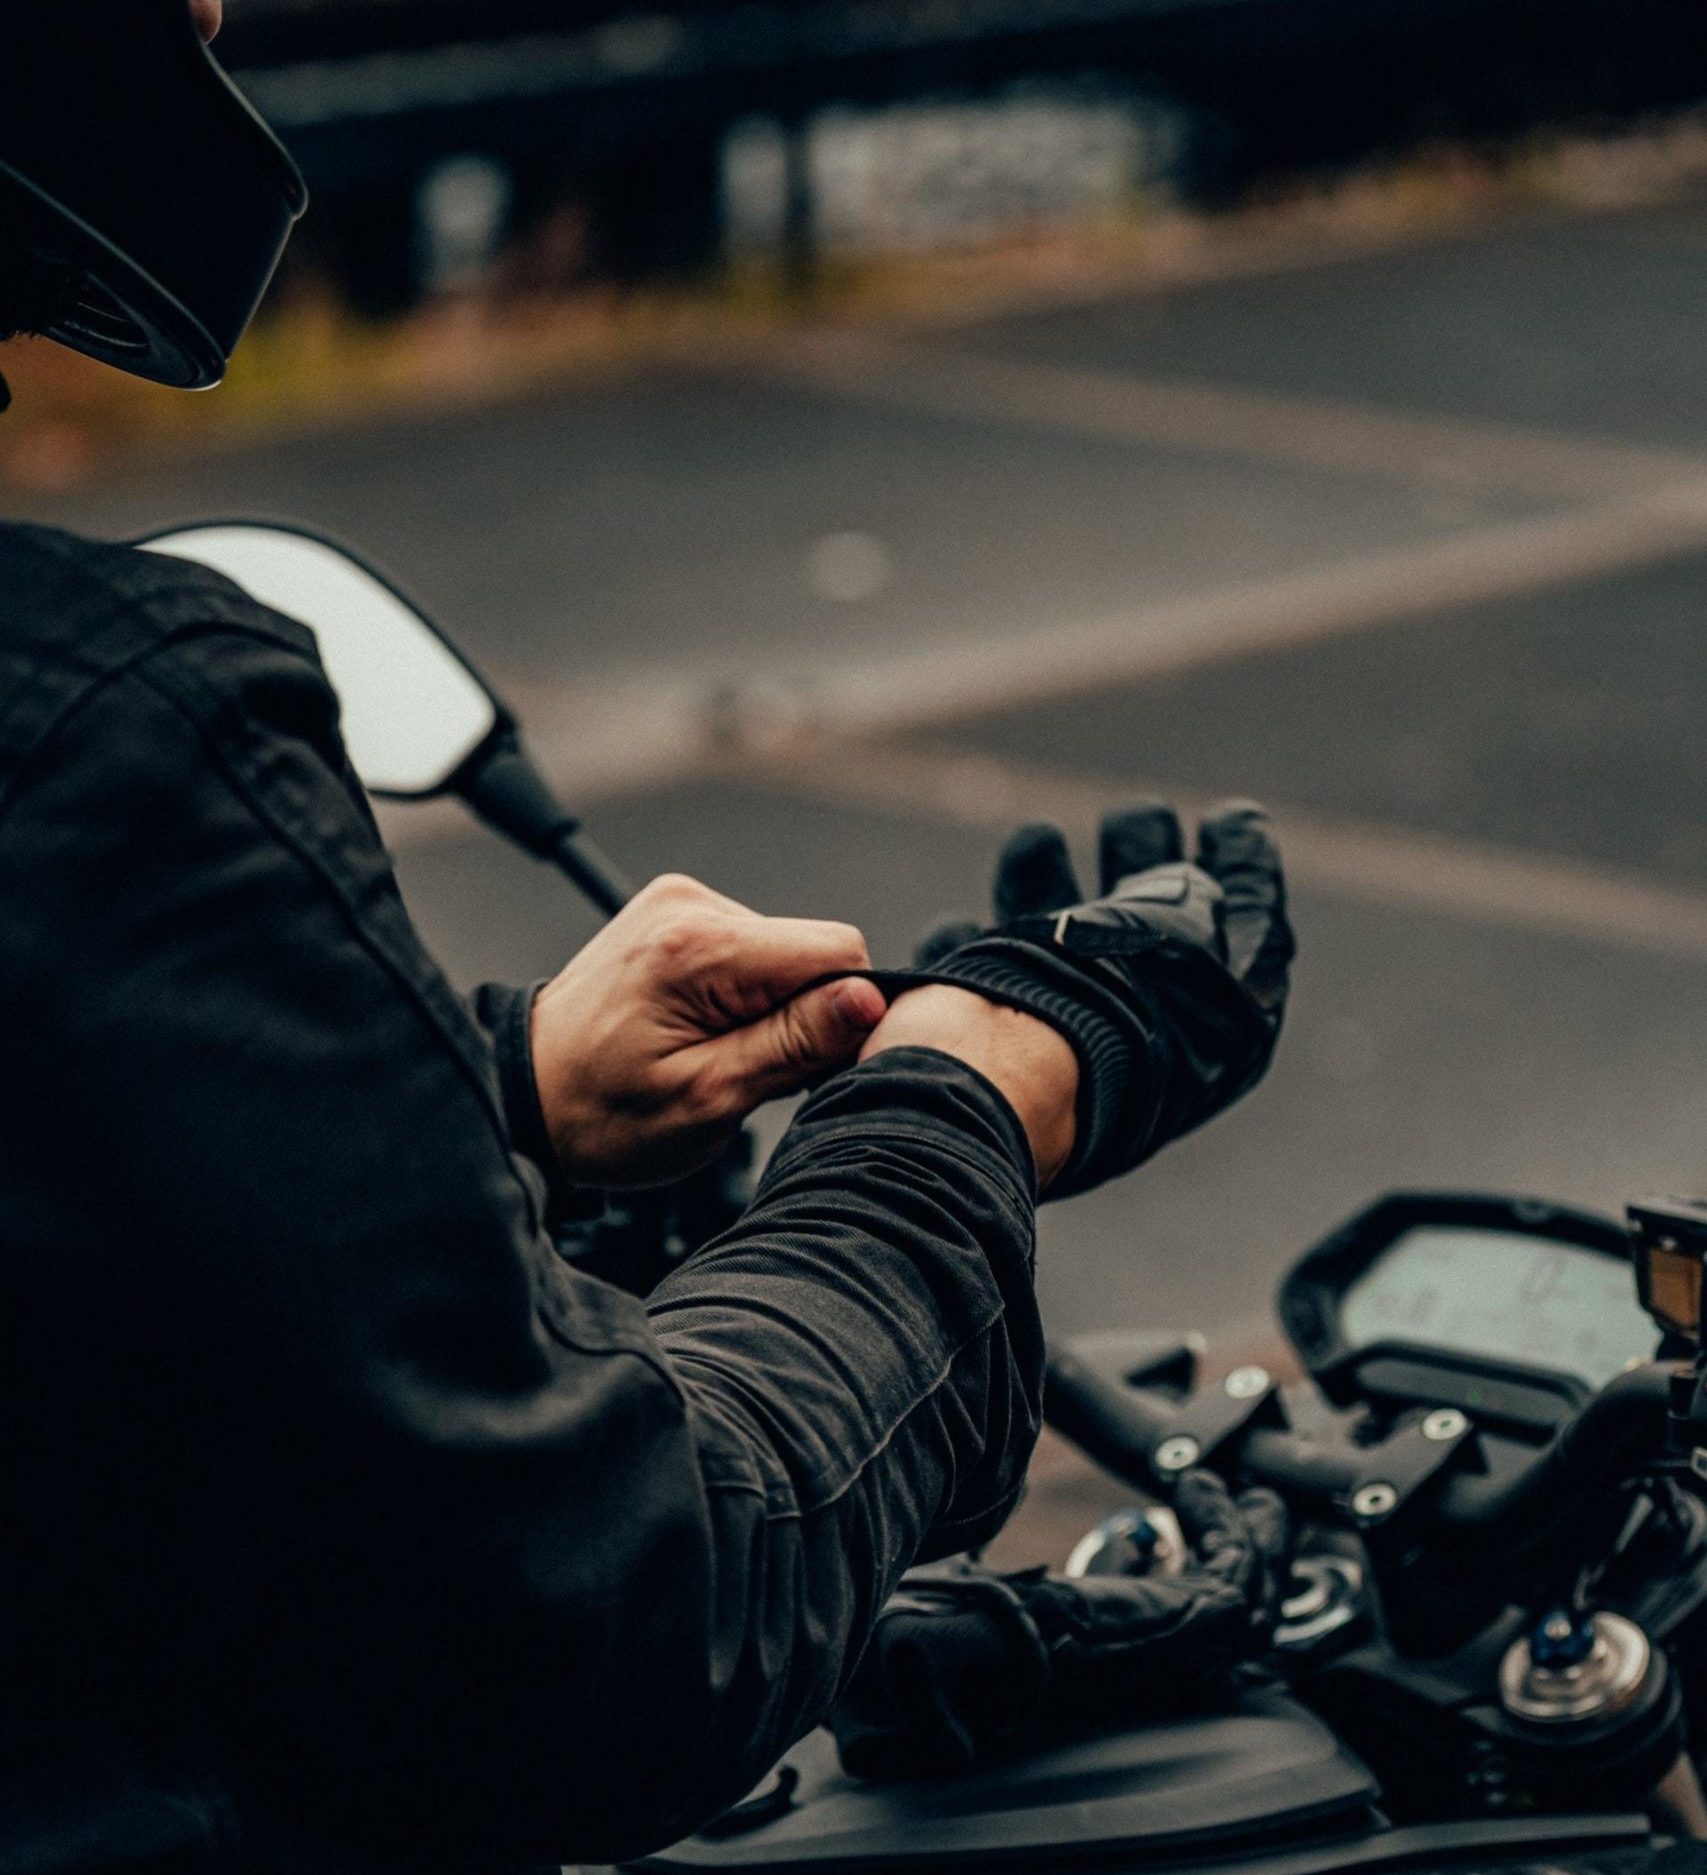 Tips Auteco: ¿Cómo elegir los mejores guantes para moto? - Auteco